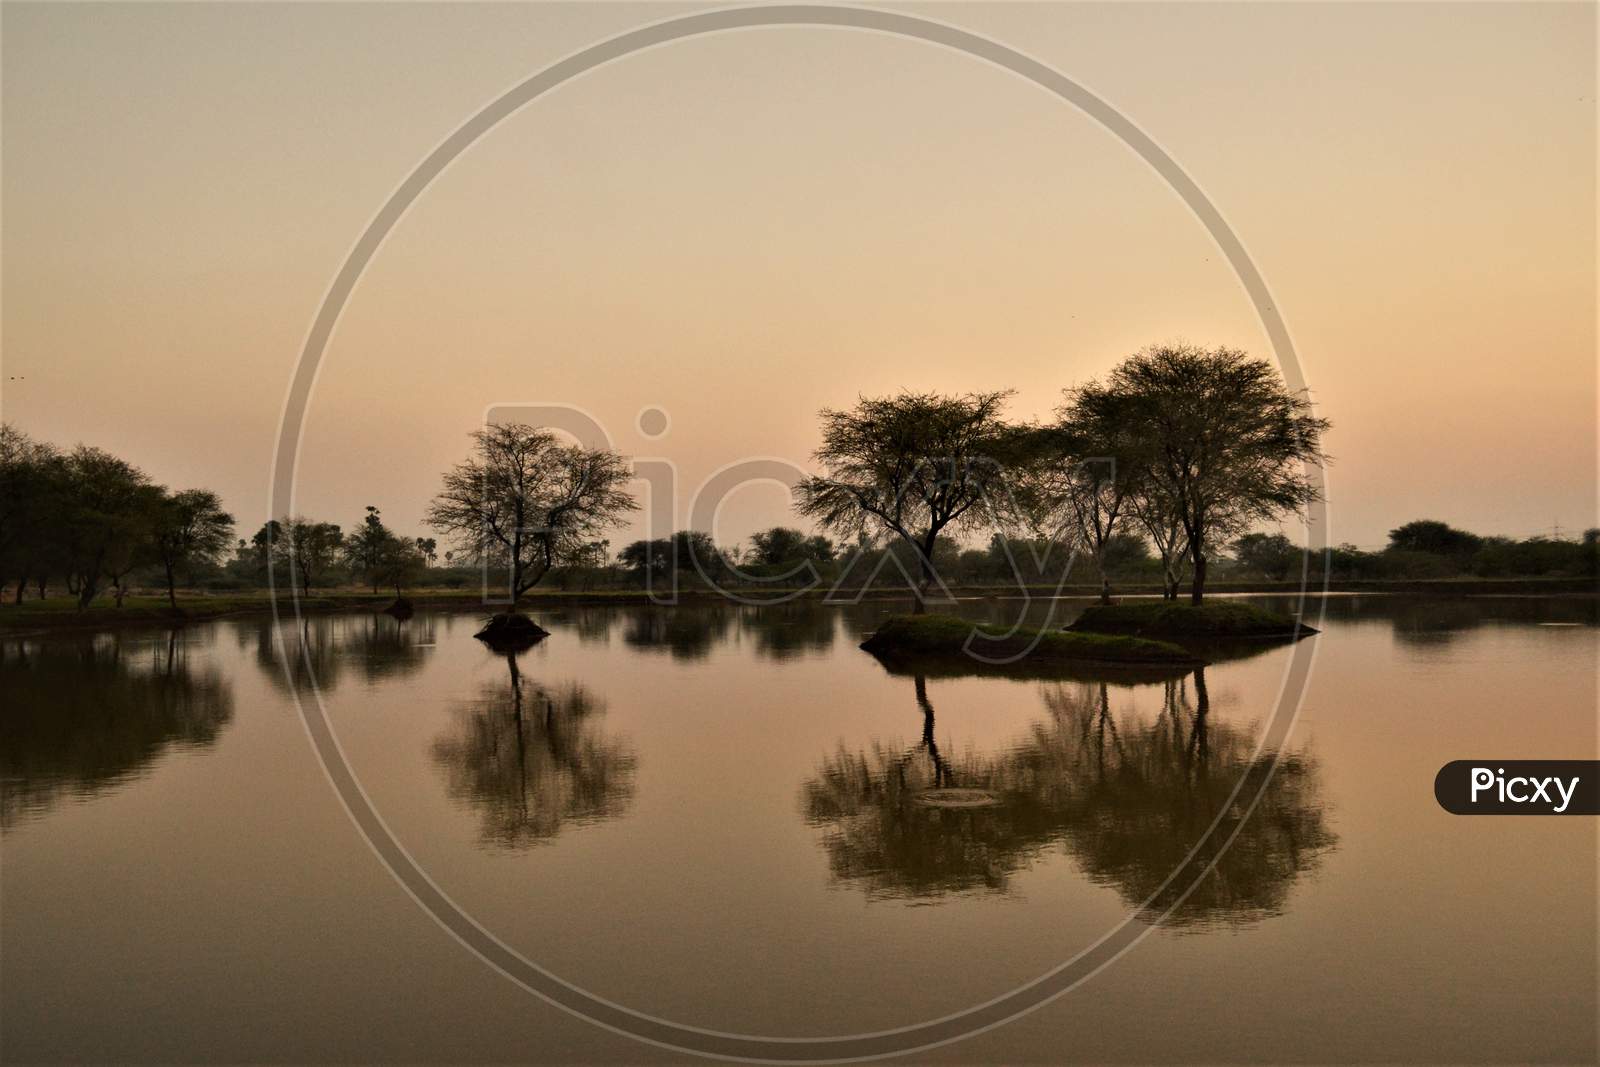 Reflection Of Trees At a Lake